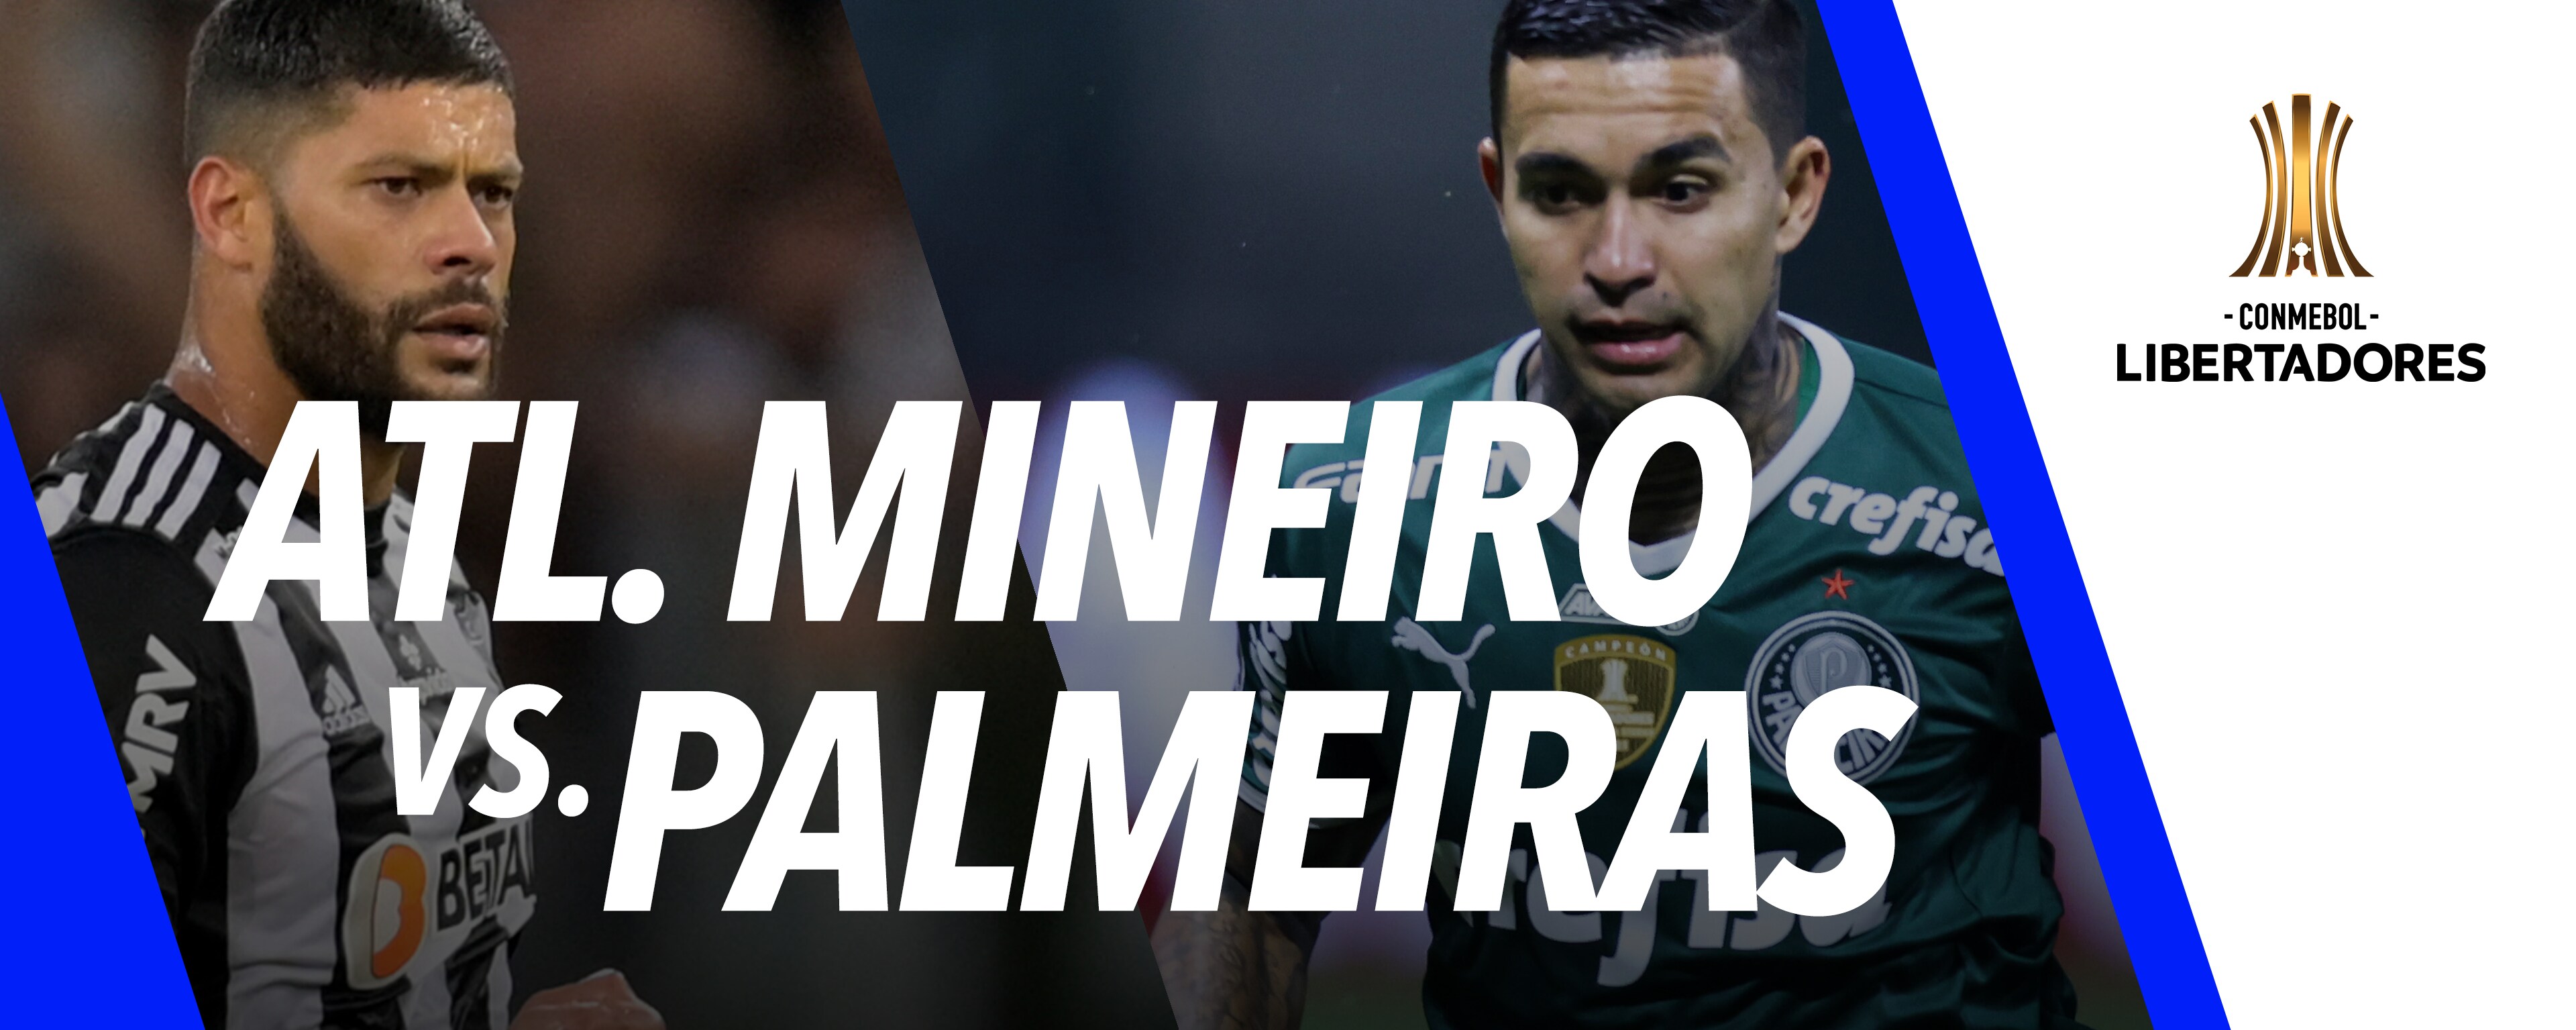 Atlético Mineiro vs Palmeiras en vivo